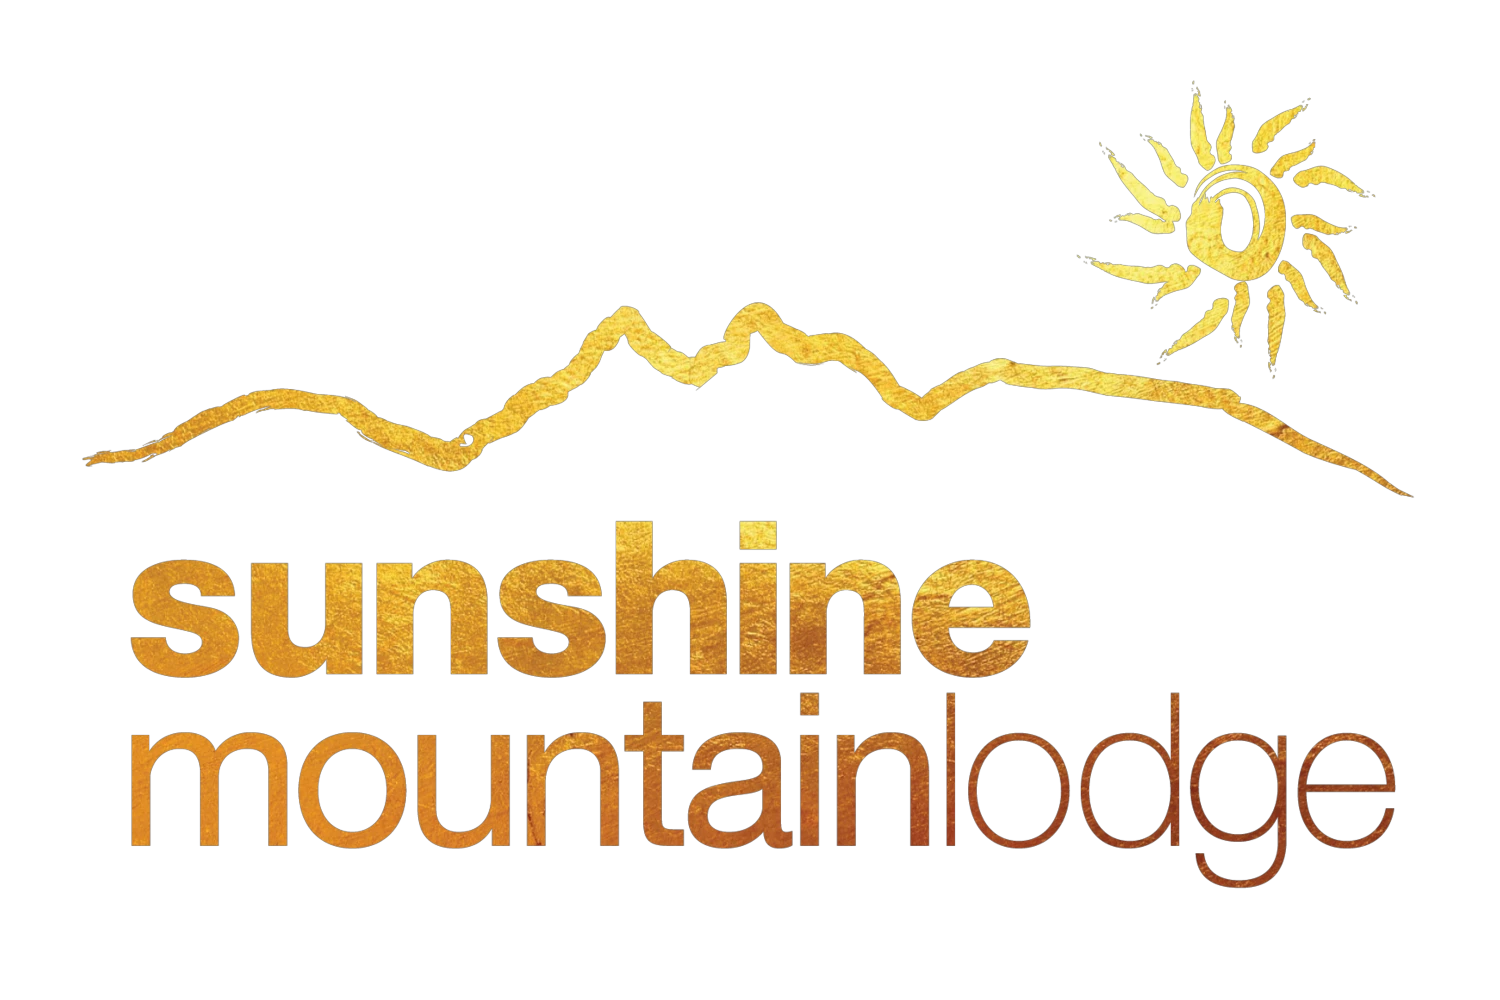 Sunshine Mountain Lodge